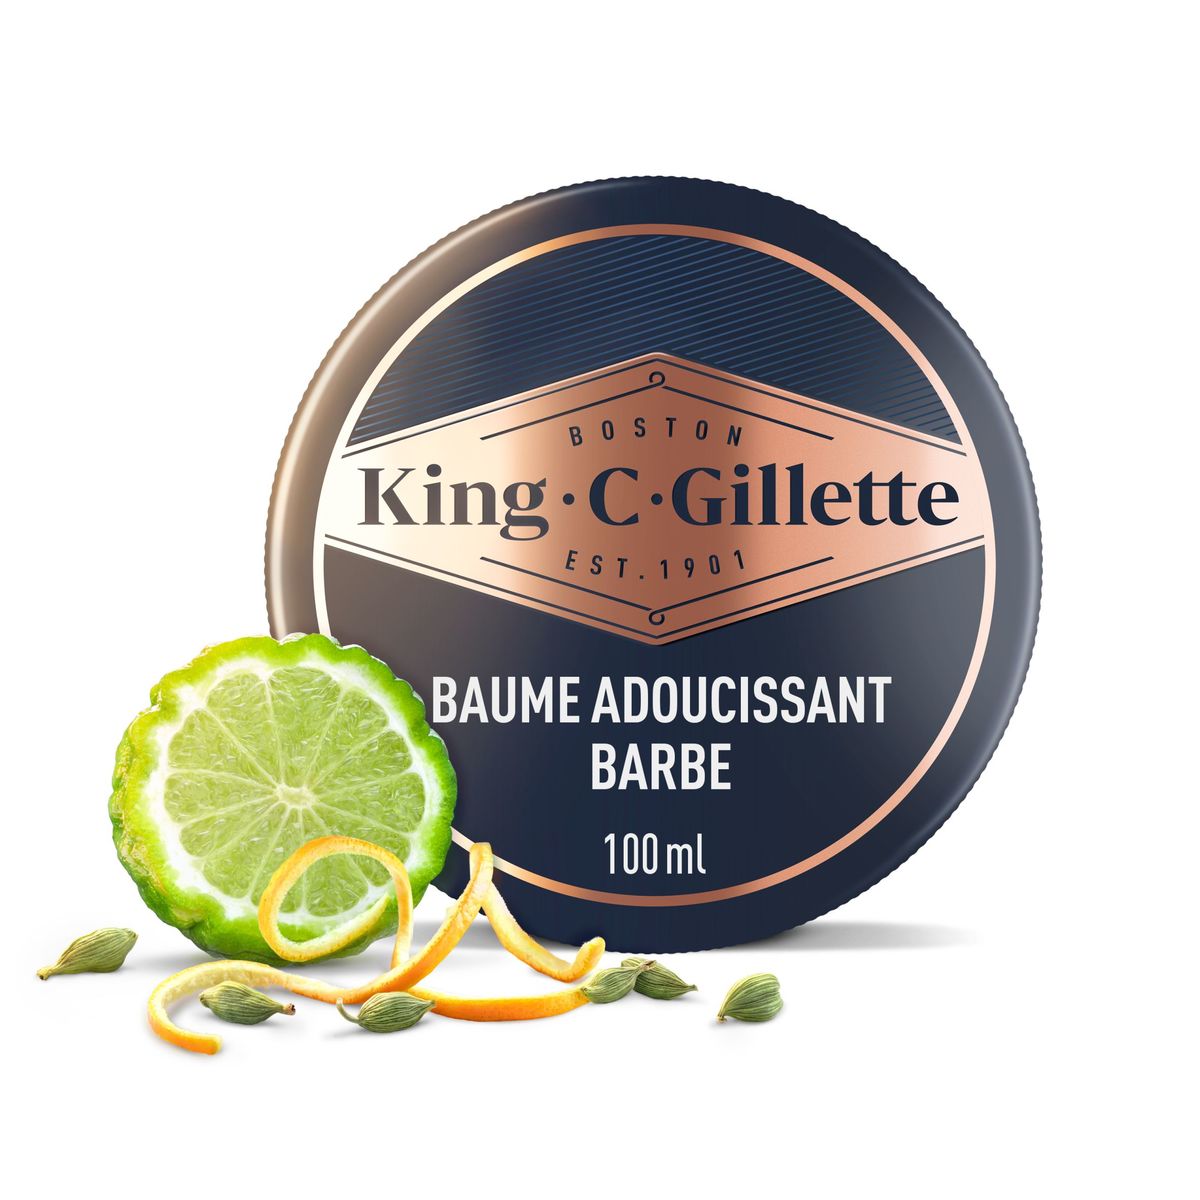 Baume Adoucissant pour barbe homme King C. Gillette, 100 ml